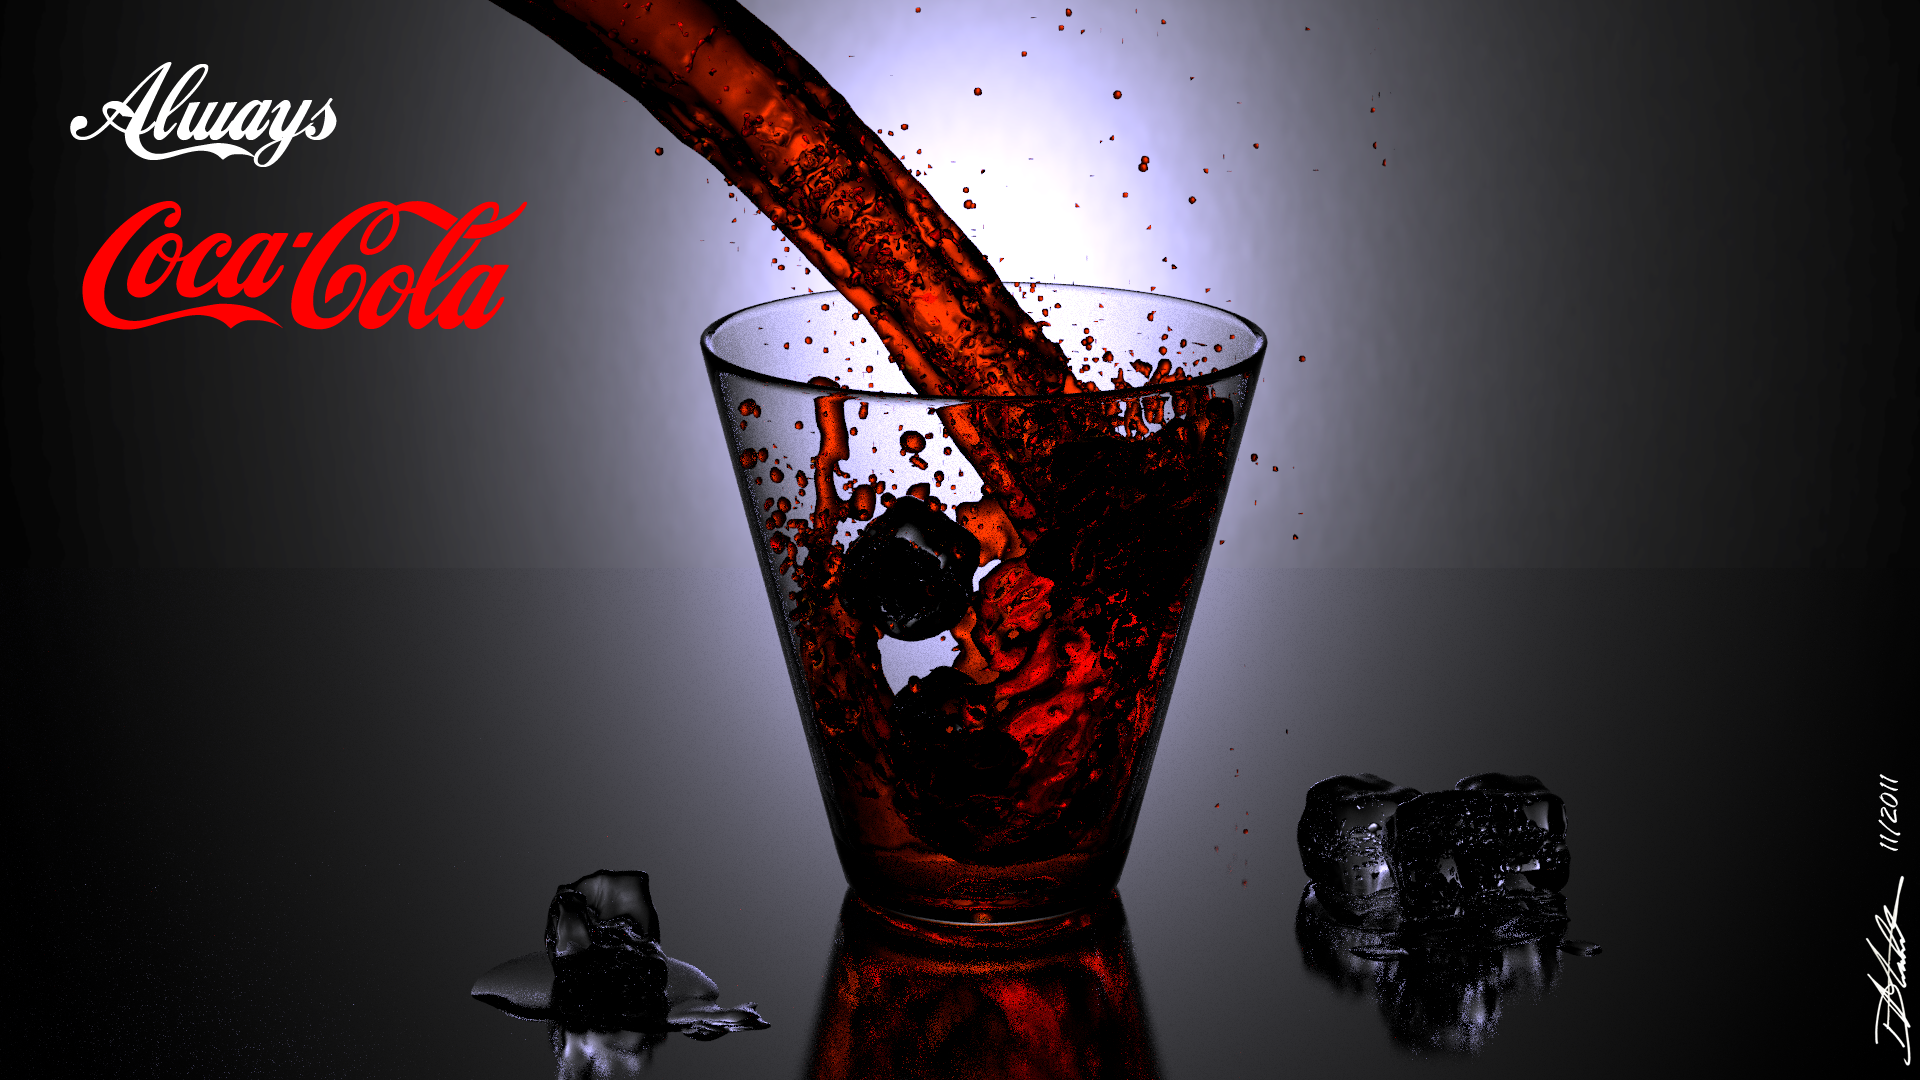 Coca-Cola без смс